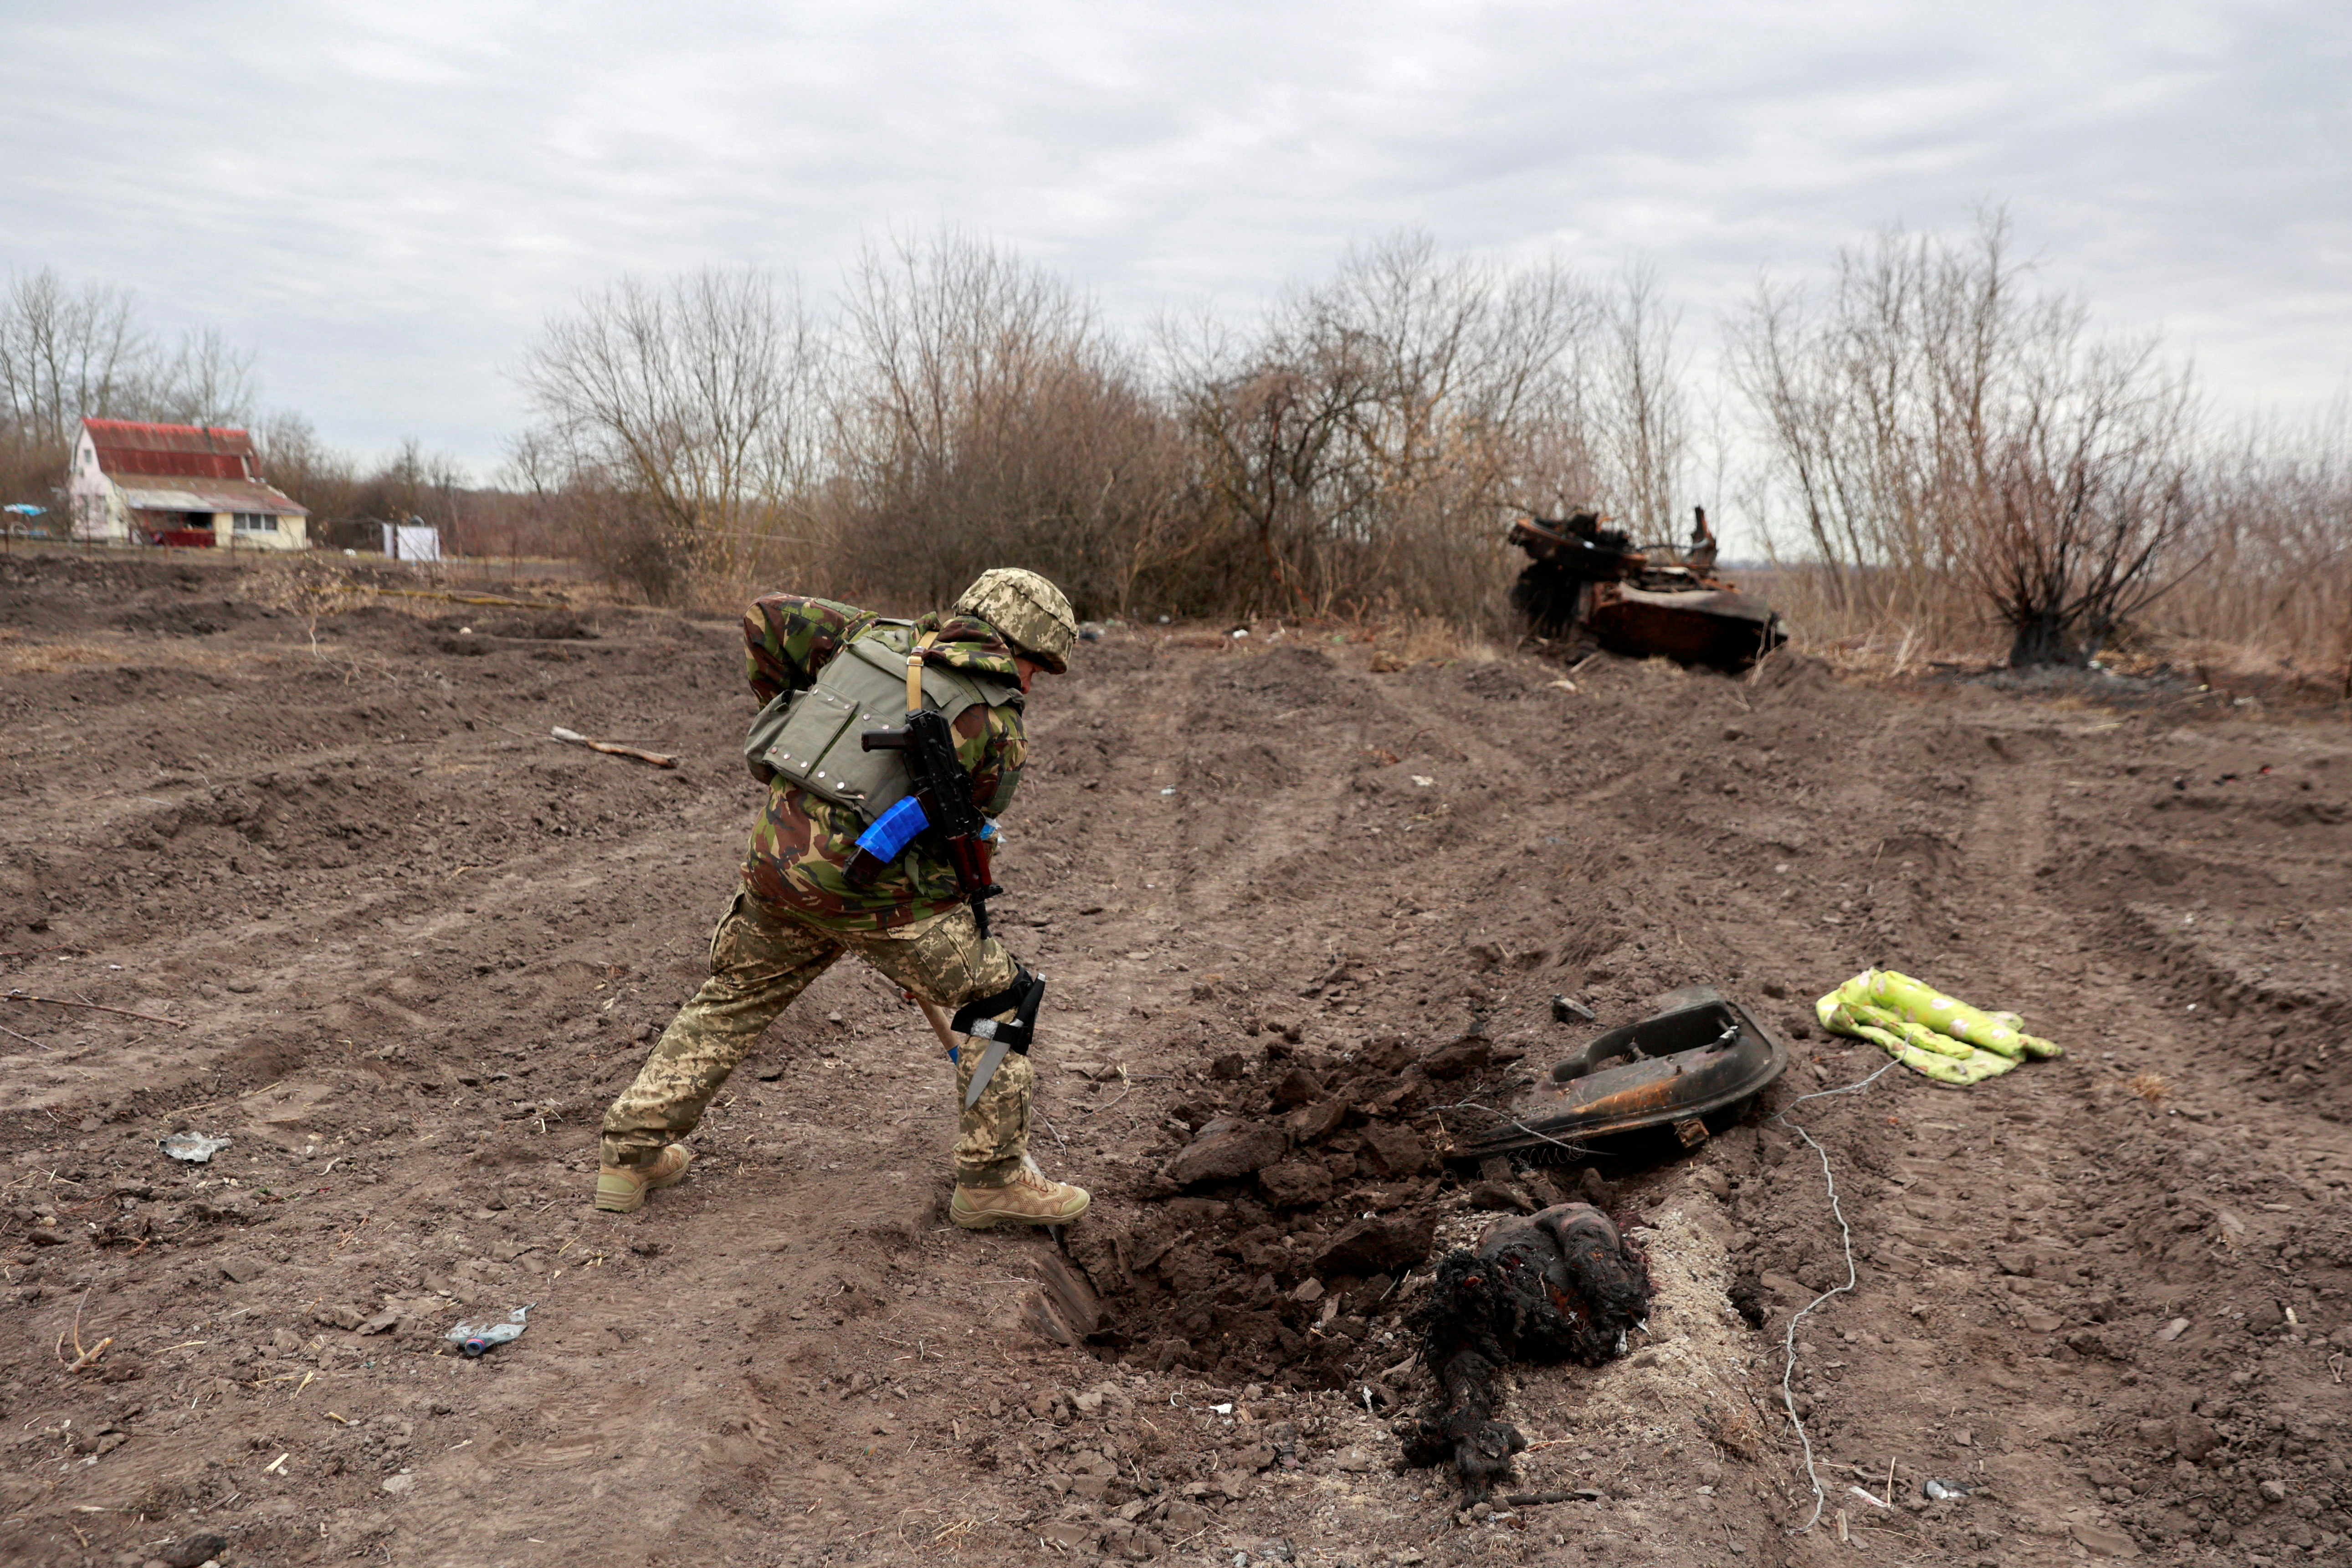 MATERIAL SENSIBLE. ESTA IMAGEN PUEDE OFENDER O MOLESTAR Un militar ucraniano entierra los restos de lo que dice que es un cadáver de un soldado ruso en el pueblo de Lukianivka que fue recientemente recuperado por las Fuerzas Armadas de Ucrania, en medio de la invasión rusa, en la región de Kyiv, Ucrania 28 de marzo de 2022. REUTERS/Serhii Nuzhnenko